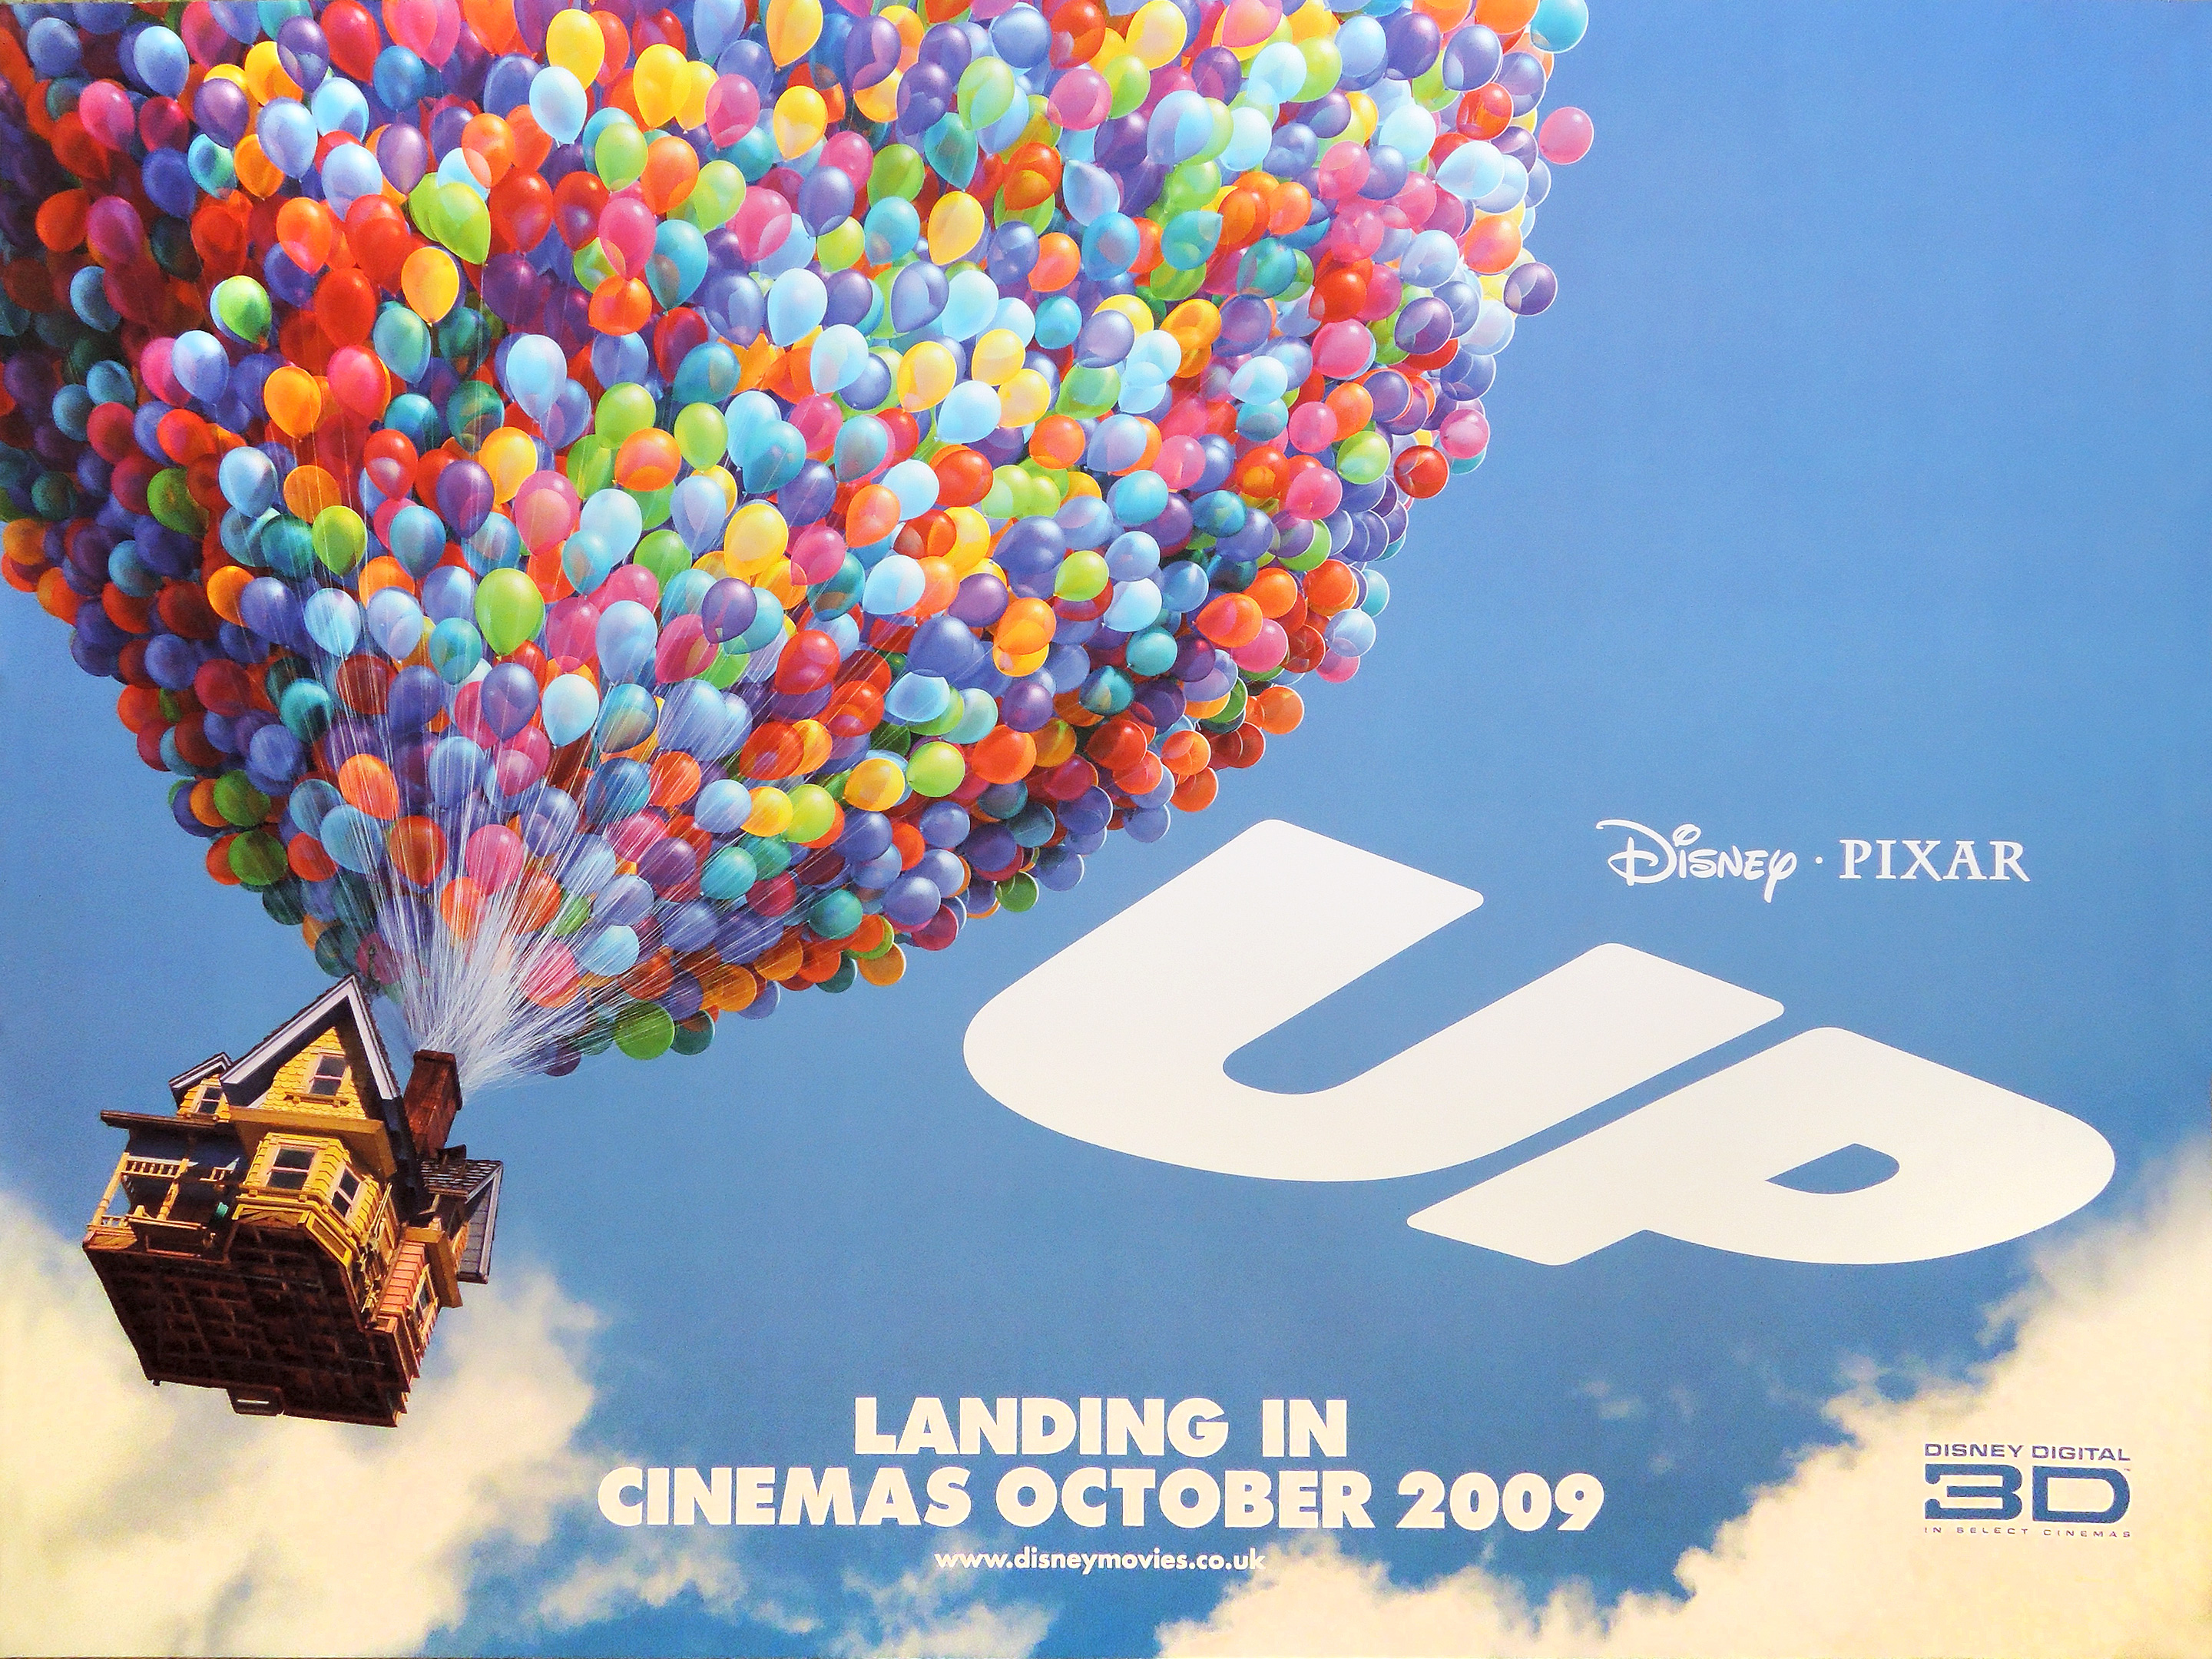 Pixar's UP movie quad poster